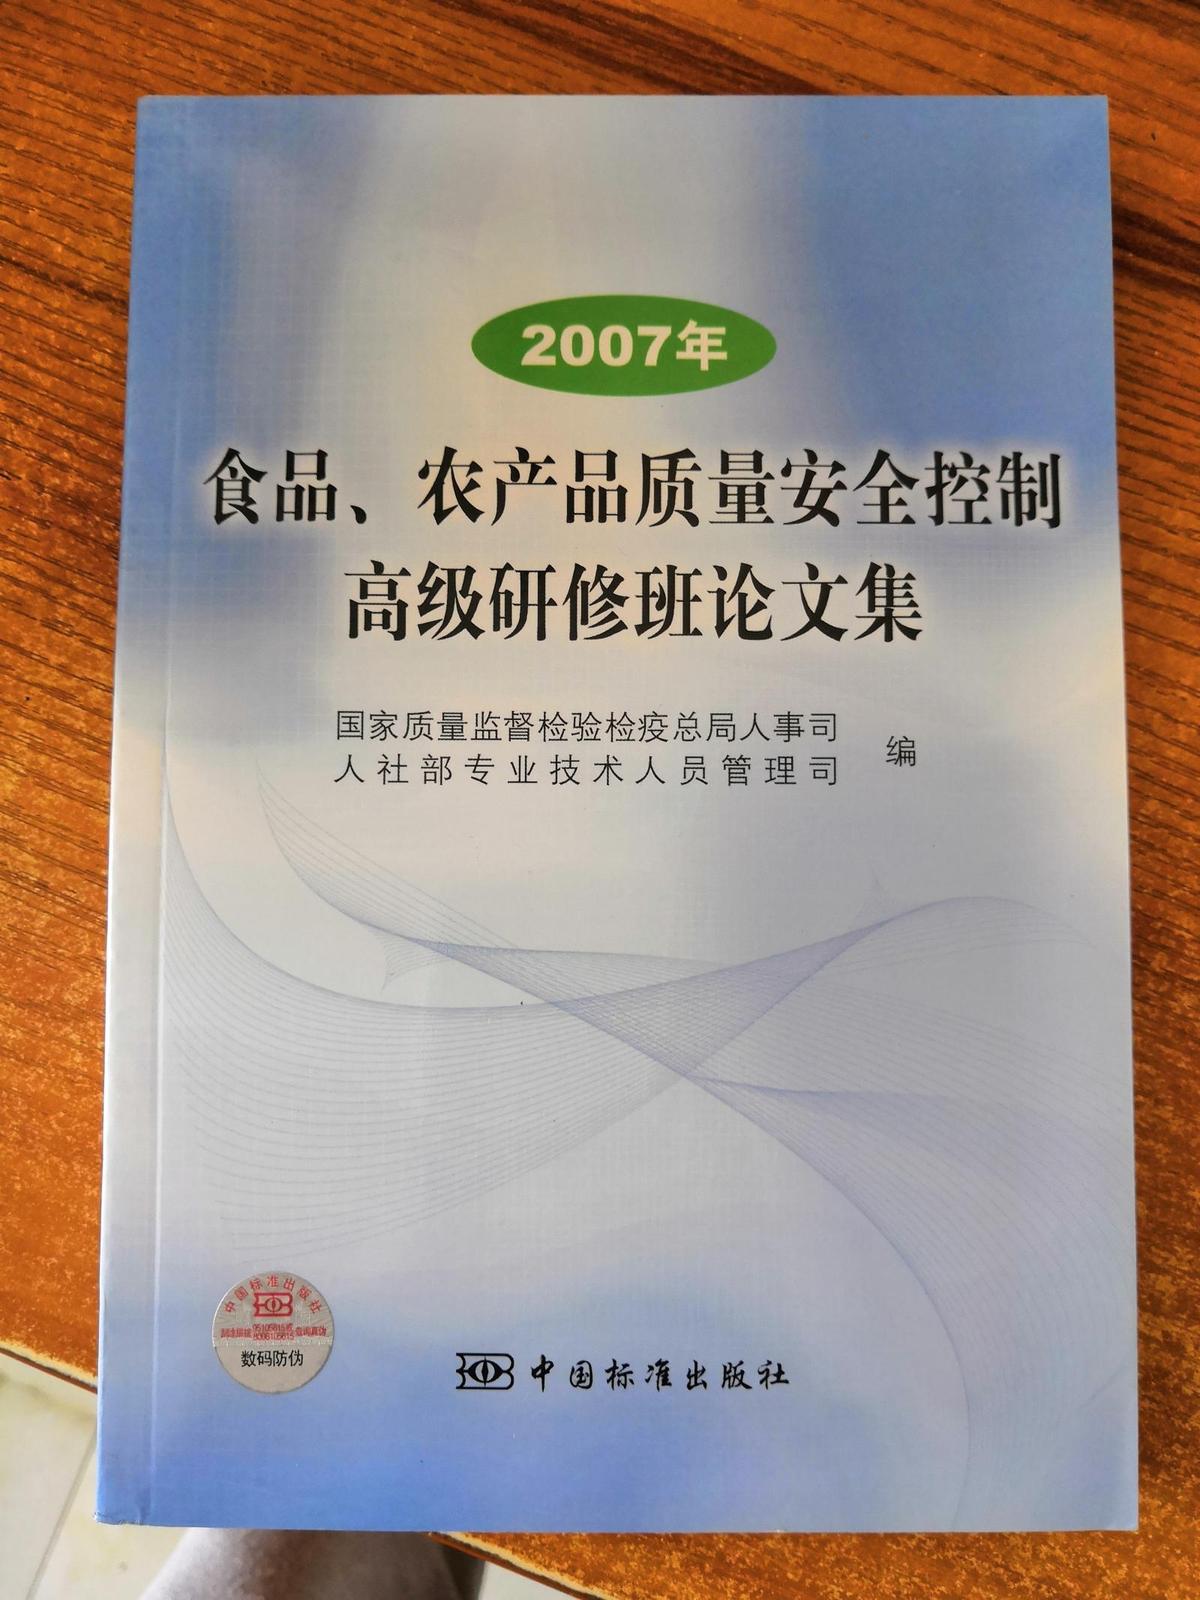 2007年 食品 农产品质量安全控制好几研修班论文集